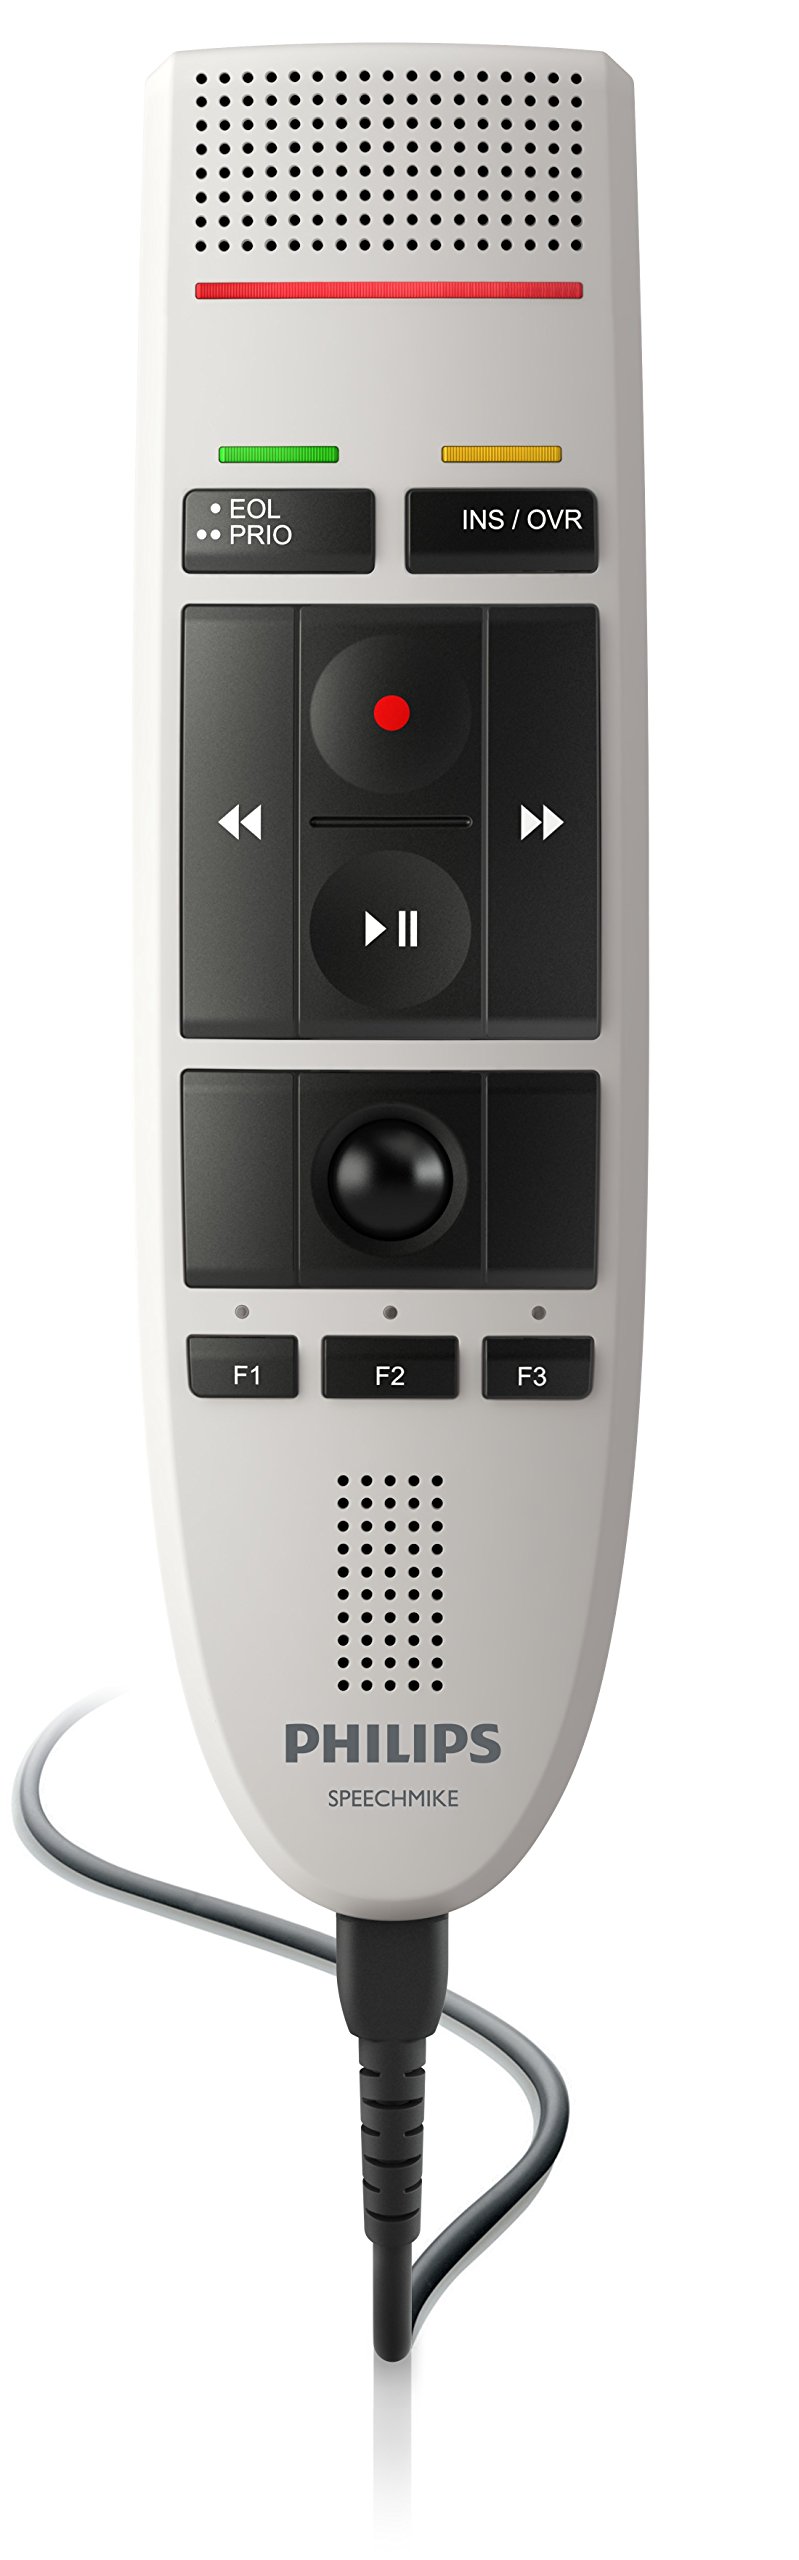  Philips LFH3200 स्पीचमाइक III प्रो (पुश बटन ऑपरेशन) यूएसबी प्रोफेशनल पीसी-डिक्टेशन माइक...